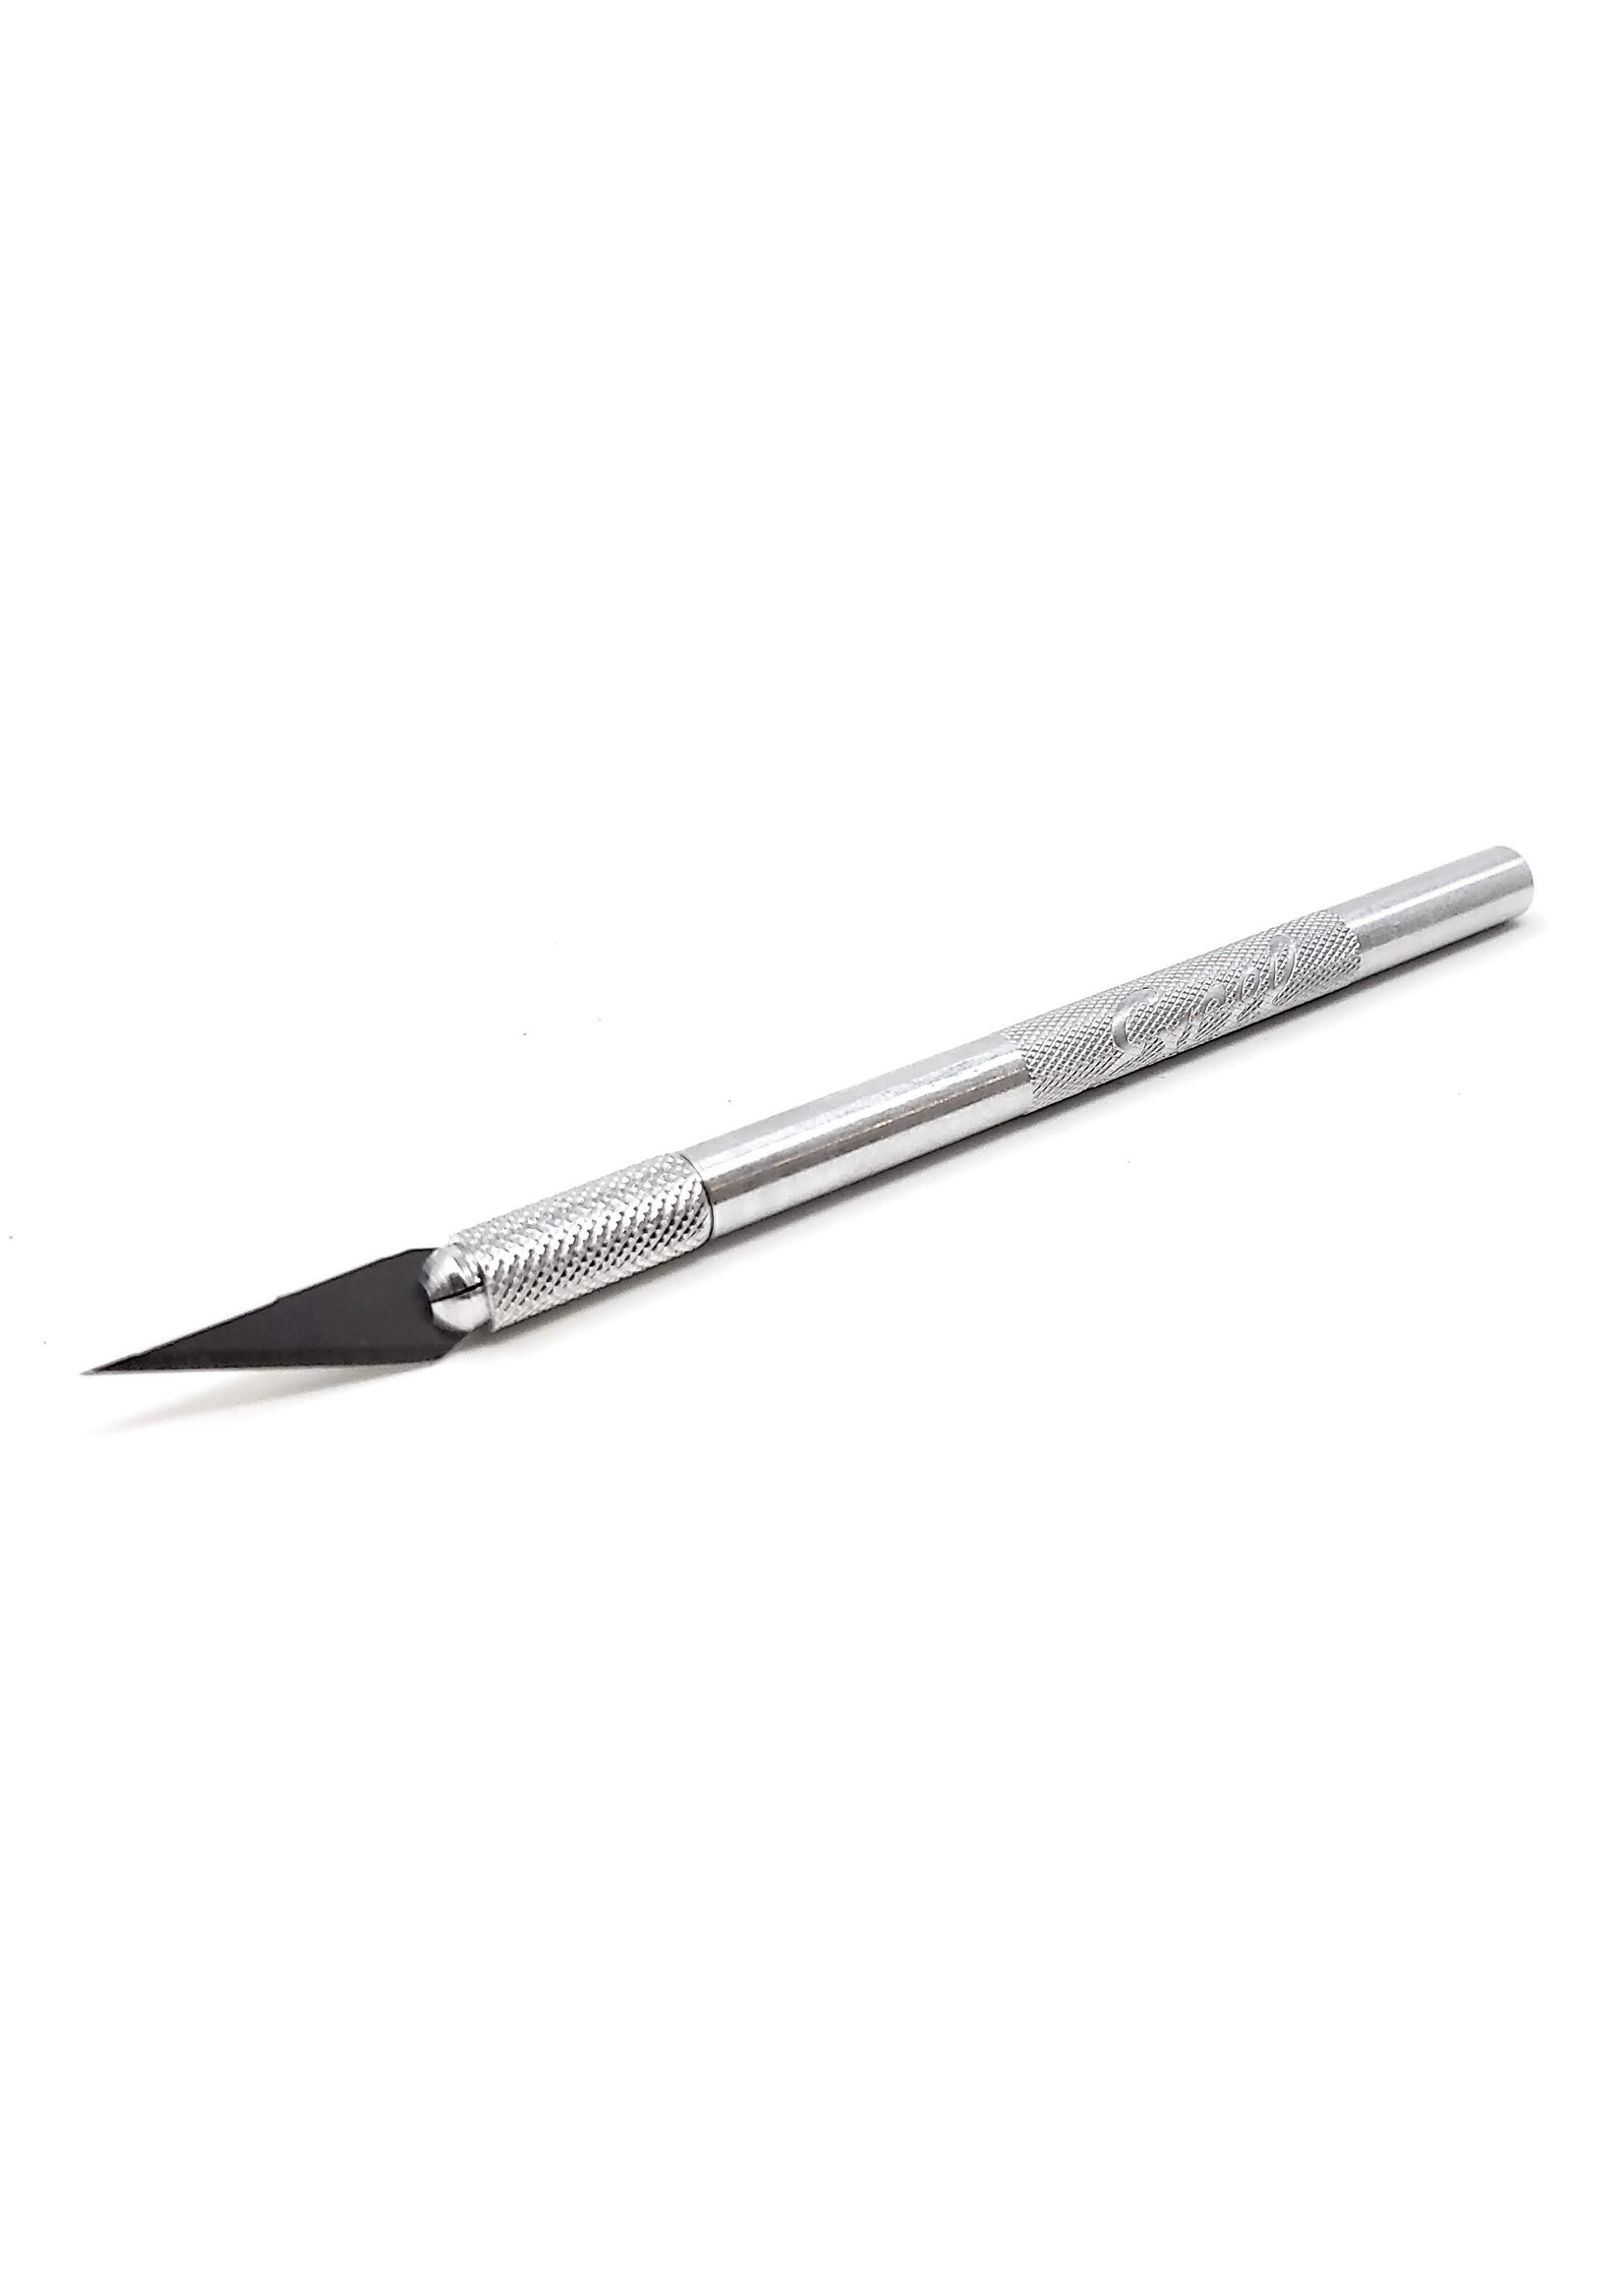 Excel 16001 - K1 Aluminum Hobby Knife